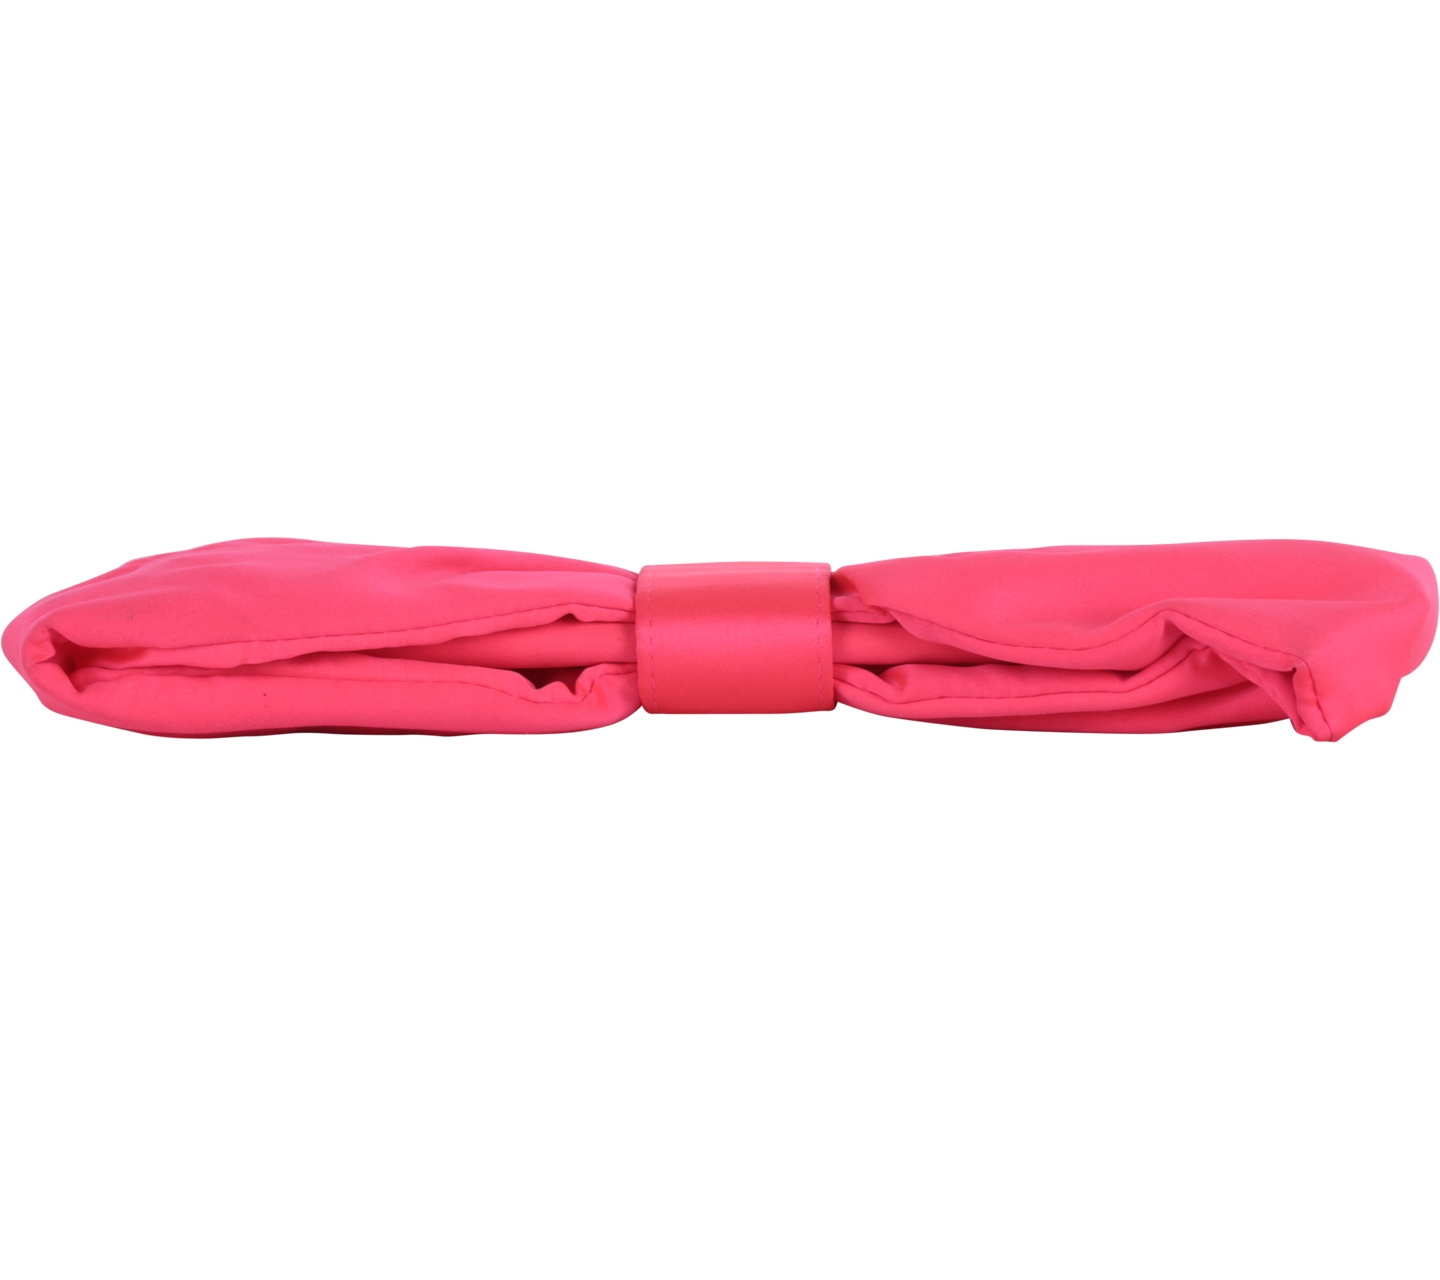 H&M Pink Ribbon Clutch